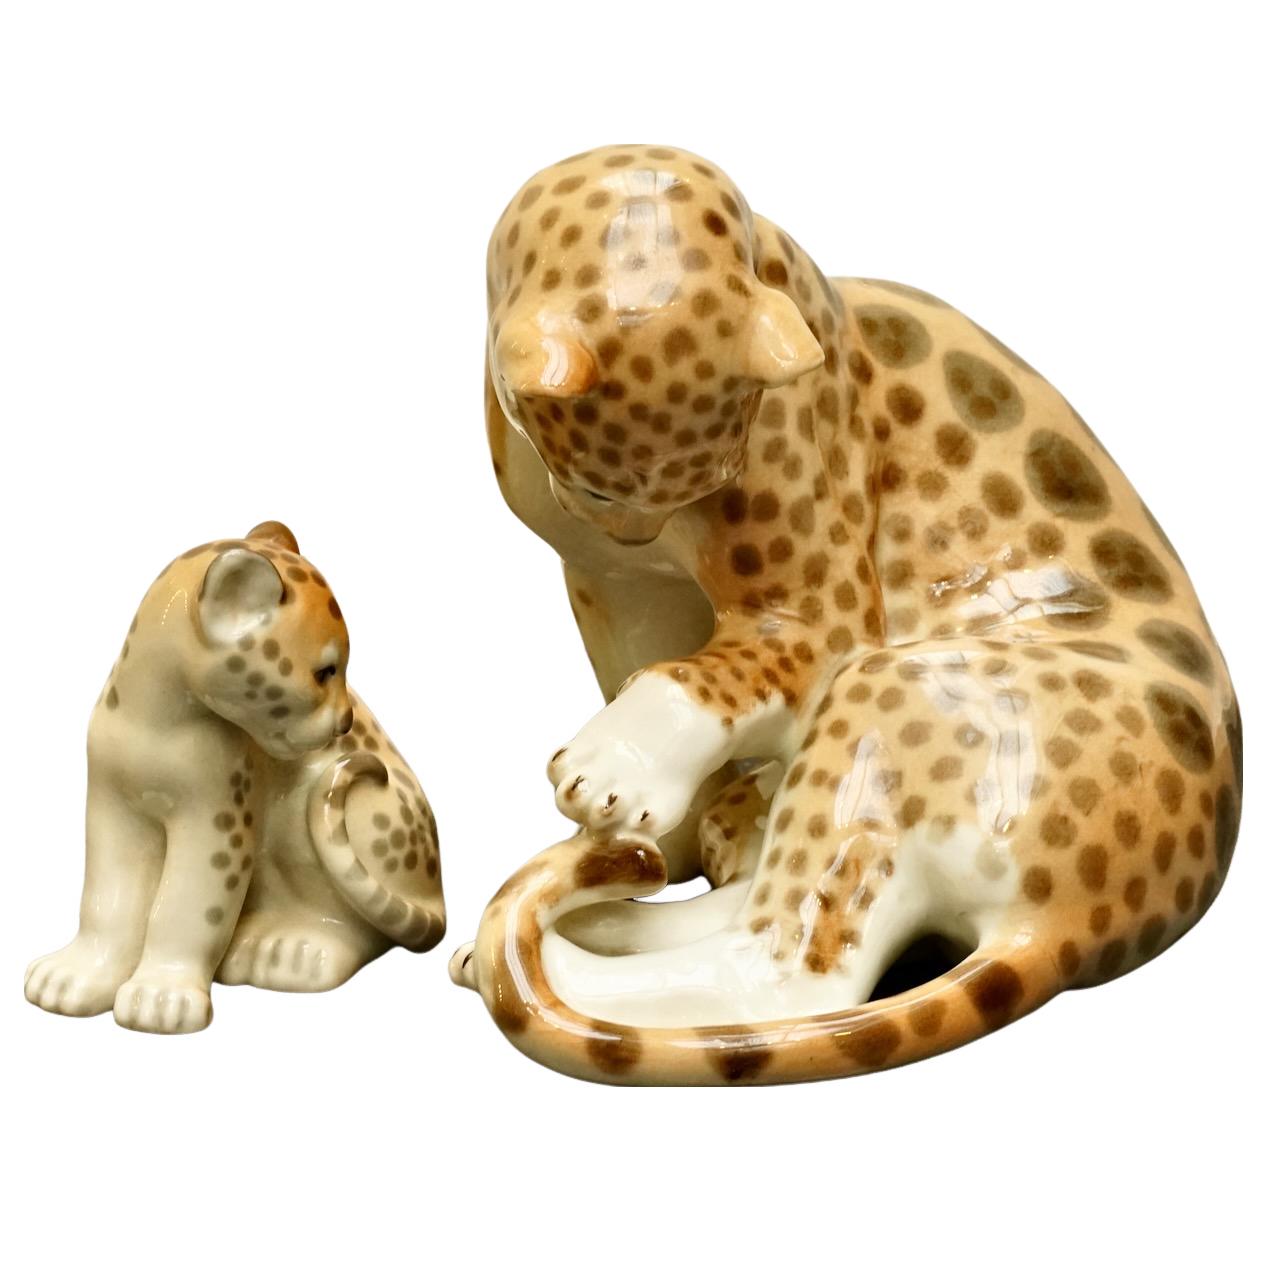 
Wunderschöne große Lomonossow-Porzellanfiguren mit Gepardenmutter und Jungtier. Handbemalt, hergestellt in Russland.

Die Gepardenmutter misst an der Basis 18,5 cm Länge bei einer maximalen Breite von 14,5 cm und einer Höhe von 17 cm. Sie ist in